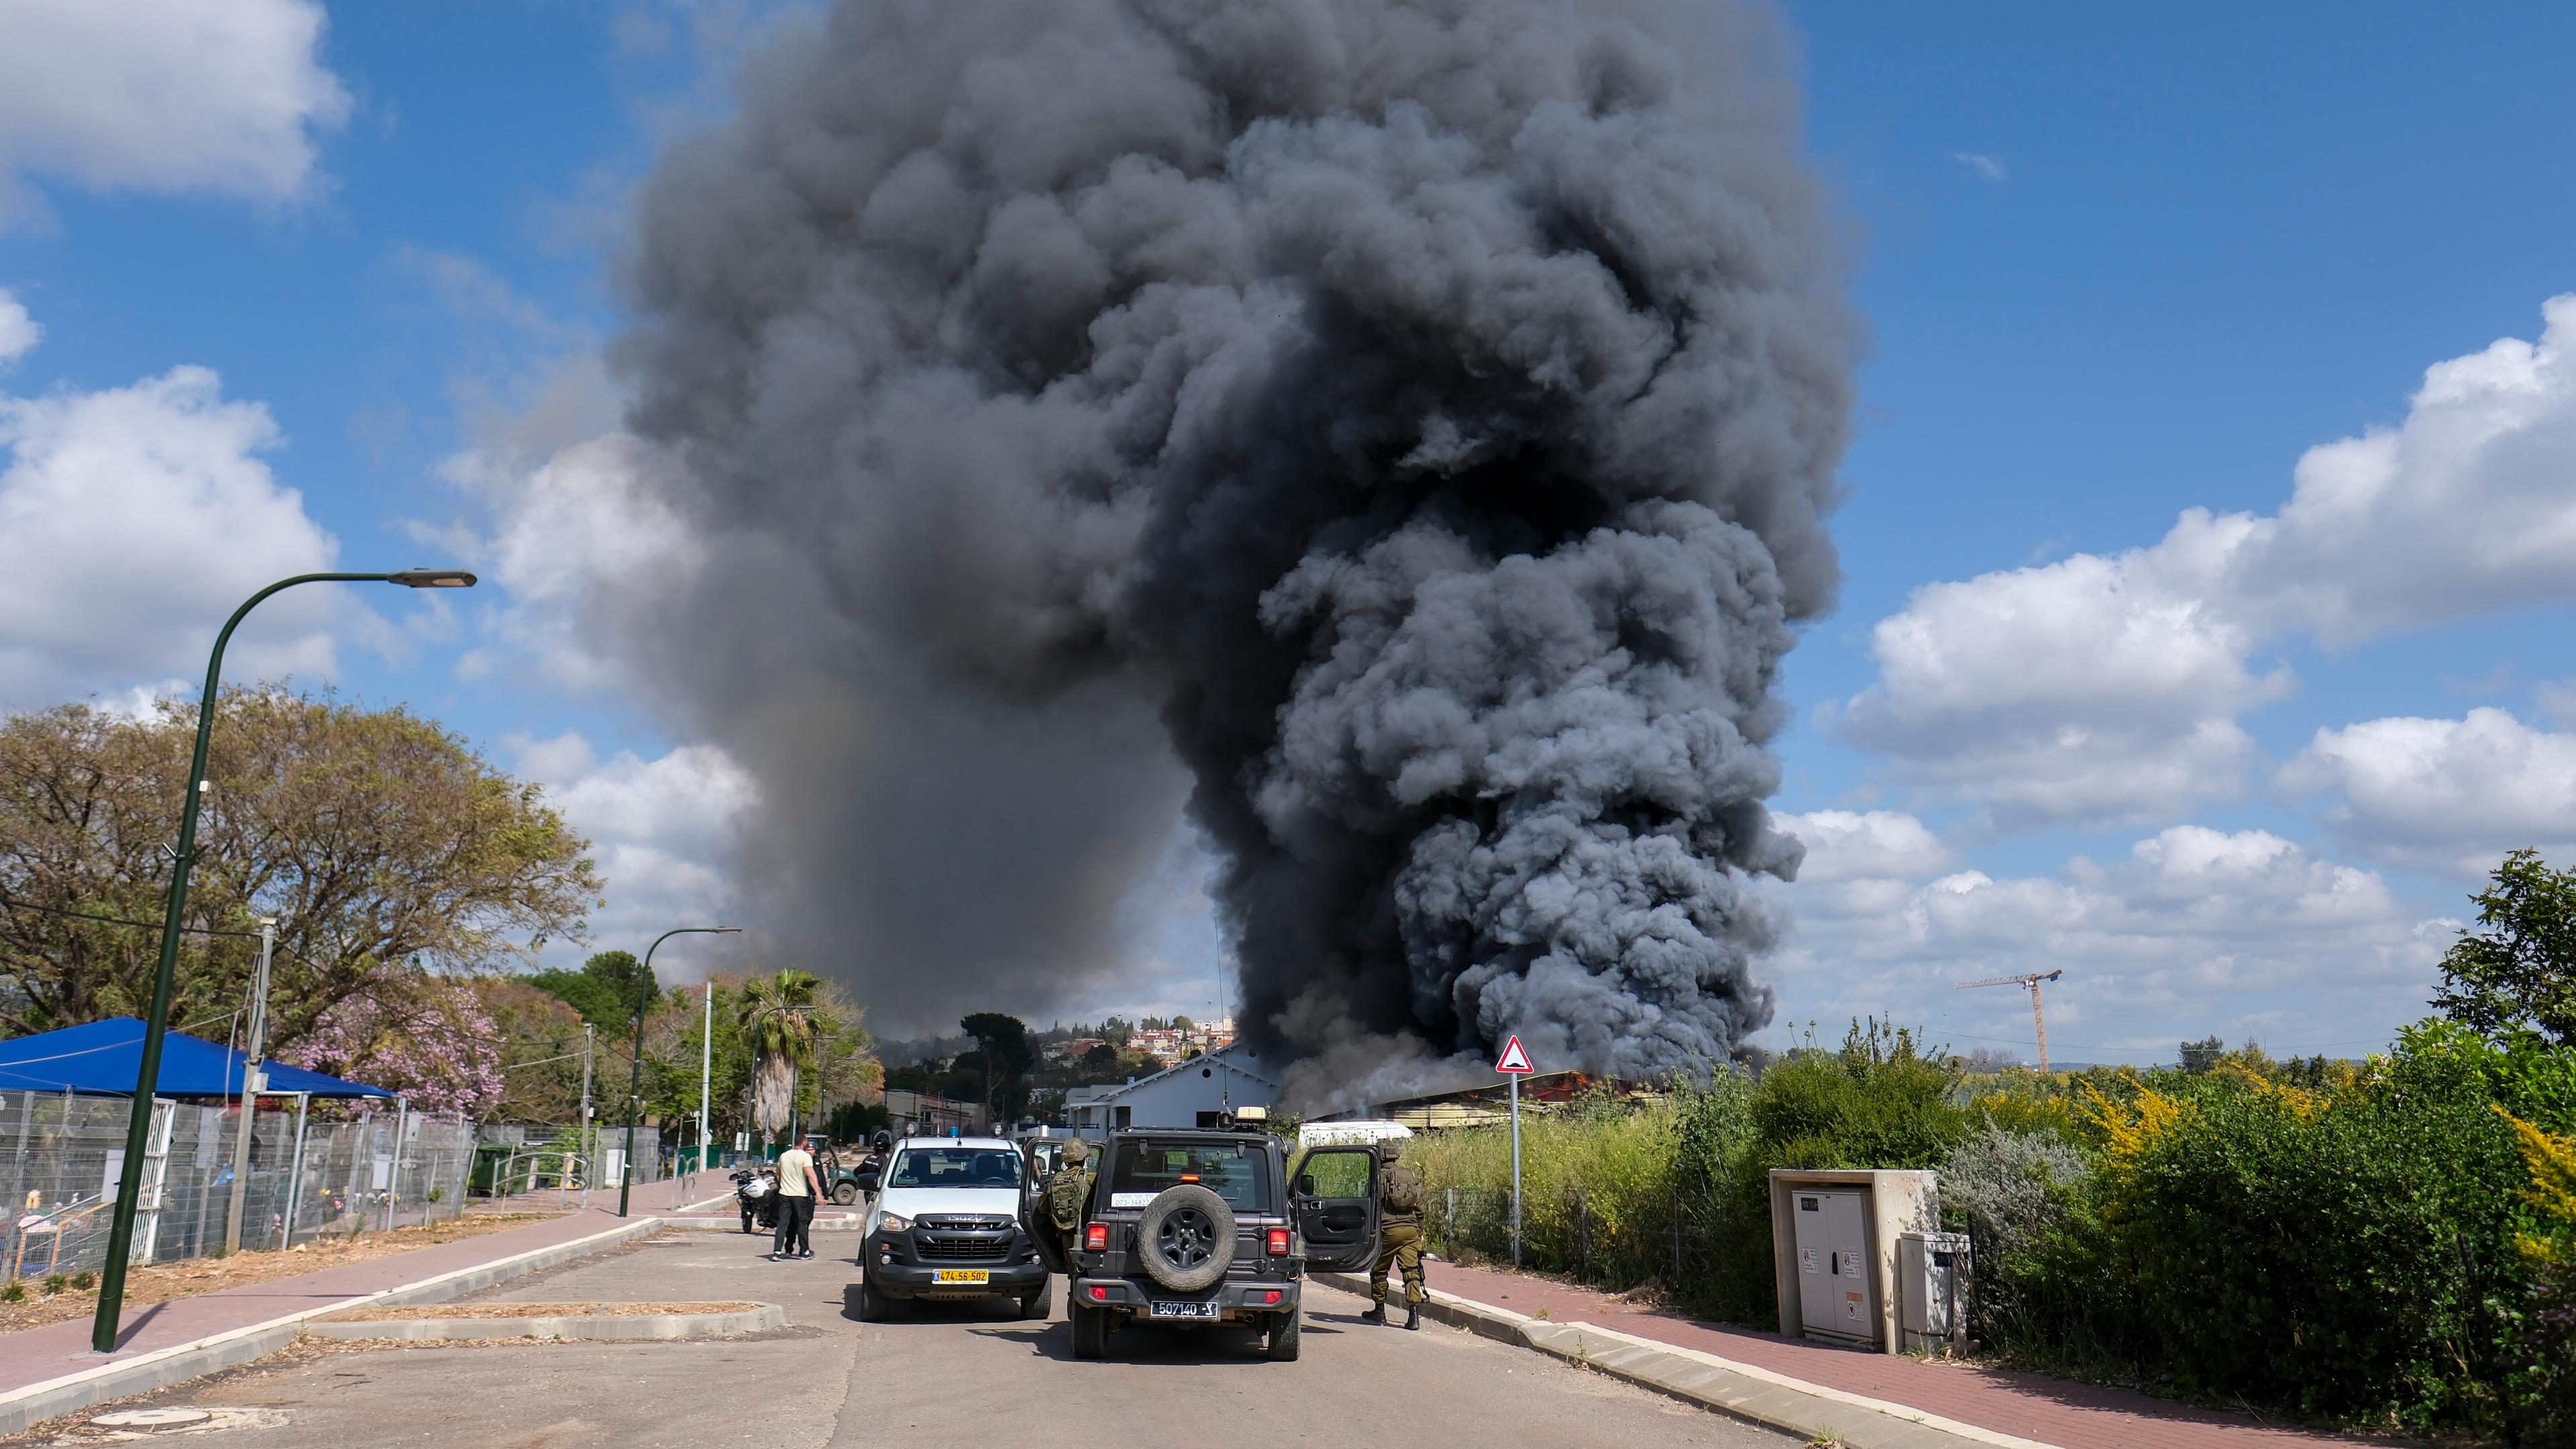 Das Bild zeigt eine Rauchwolke, die durch einen Raketeneinschlag verursacht wurde.